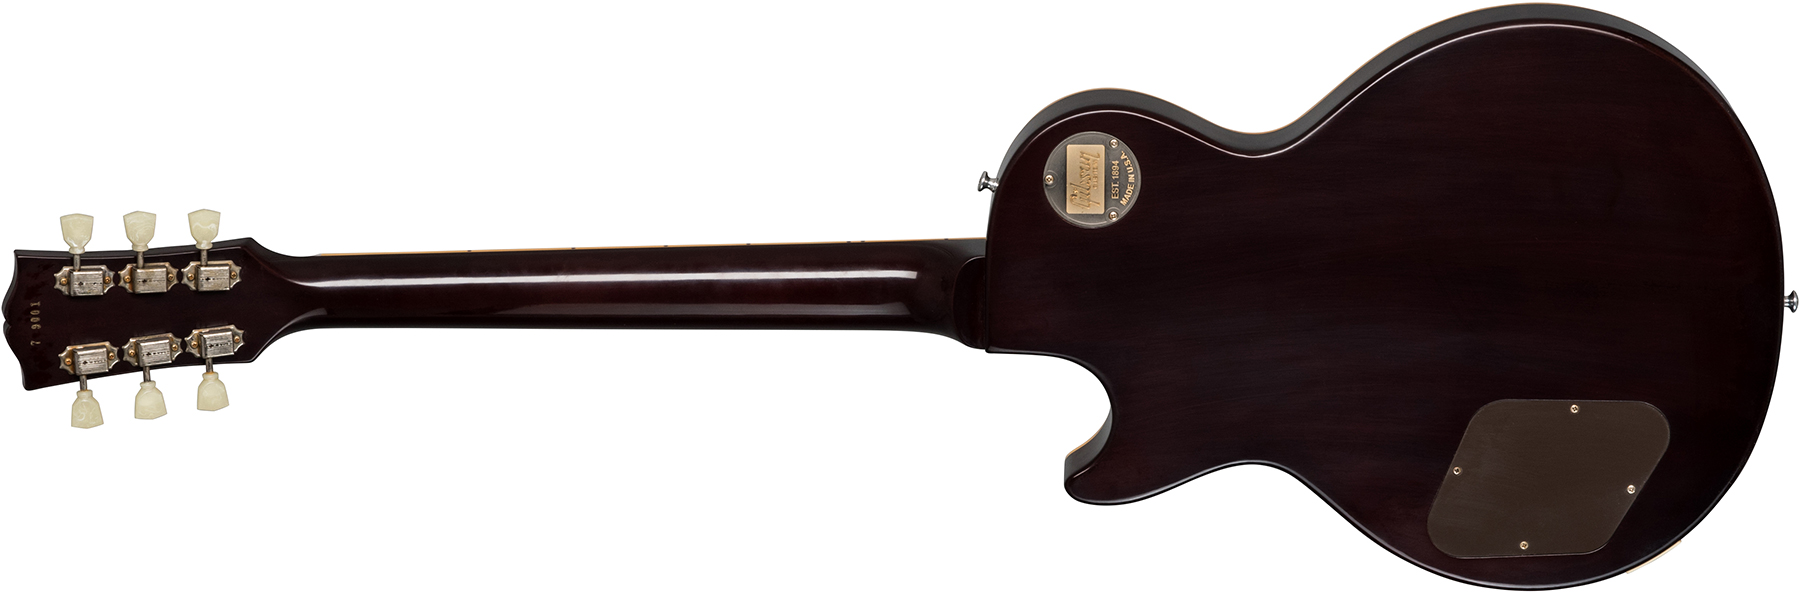 Gibson Custom Shop Les Paul Goldtop 1957 Reissue 2019 2h Ht Rw - Vos Double Gold With Dark Back - Guitare Électrique Single Cut - Variation 1